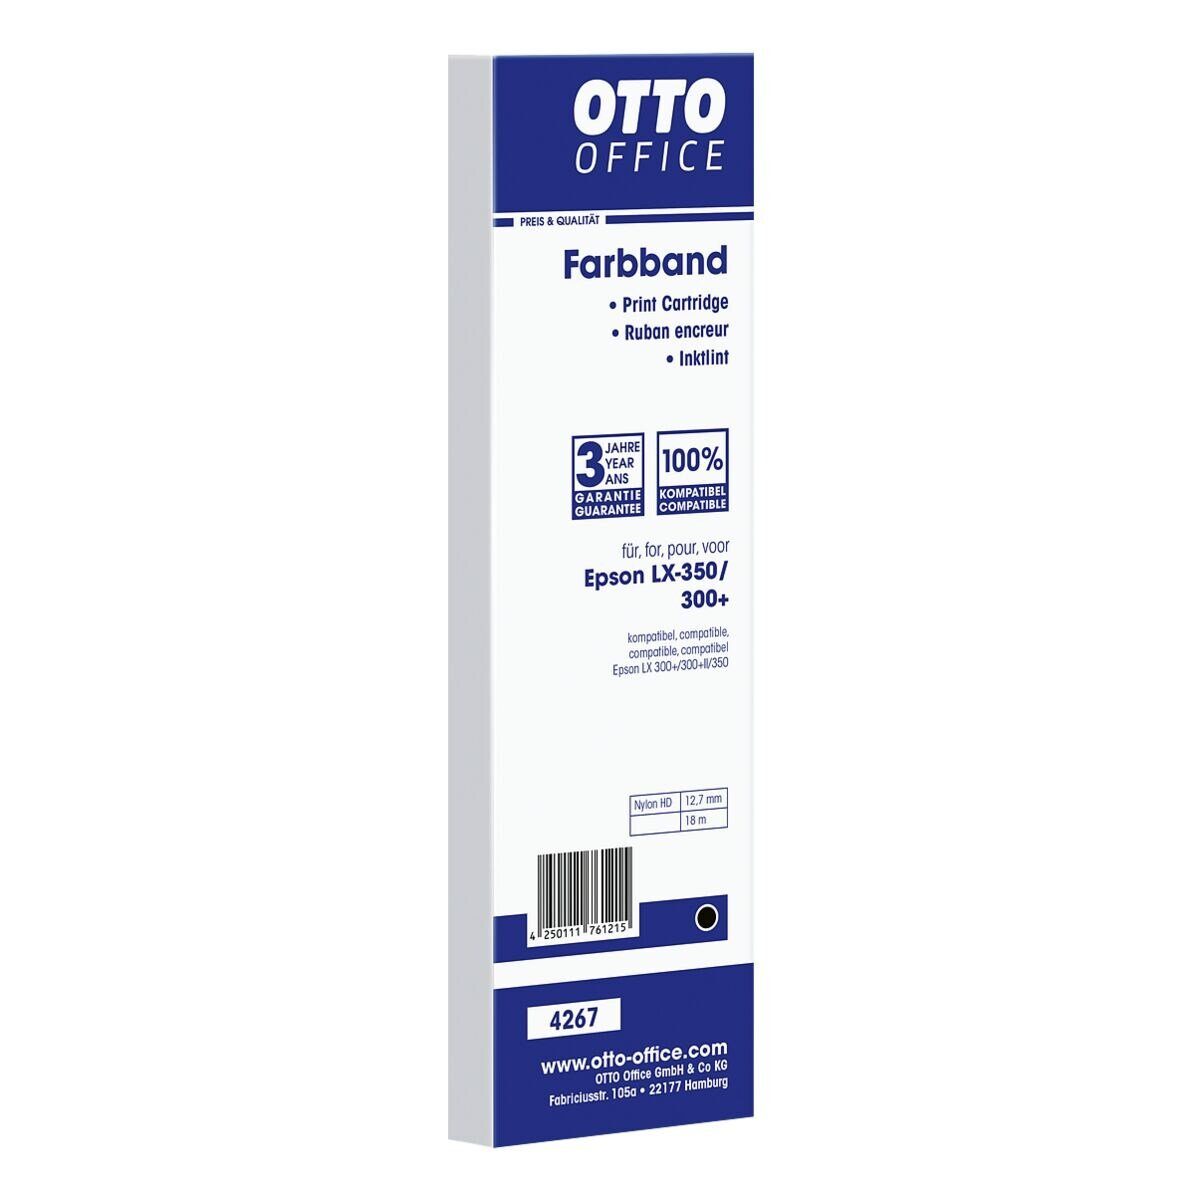 Otto Office  Office Druckerband S015637, Farbband für Nadeldrucker, schwarz